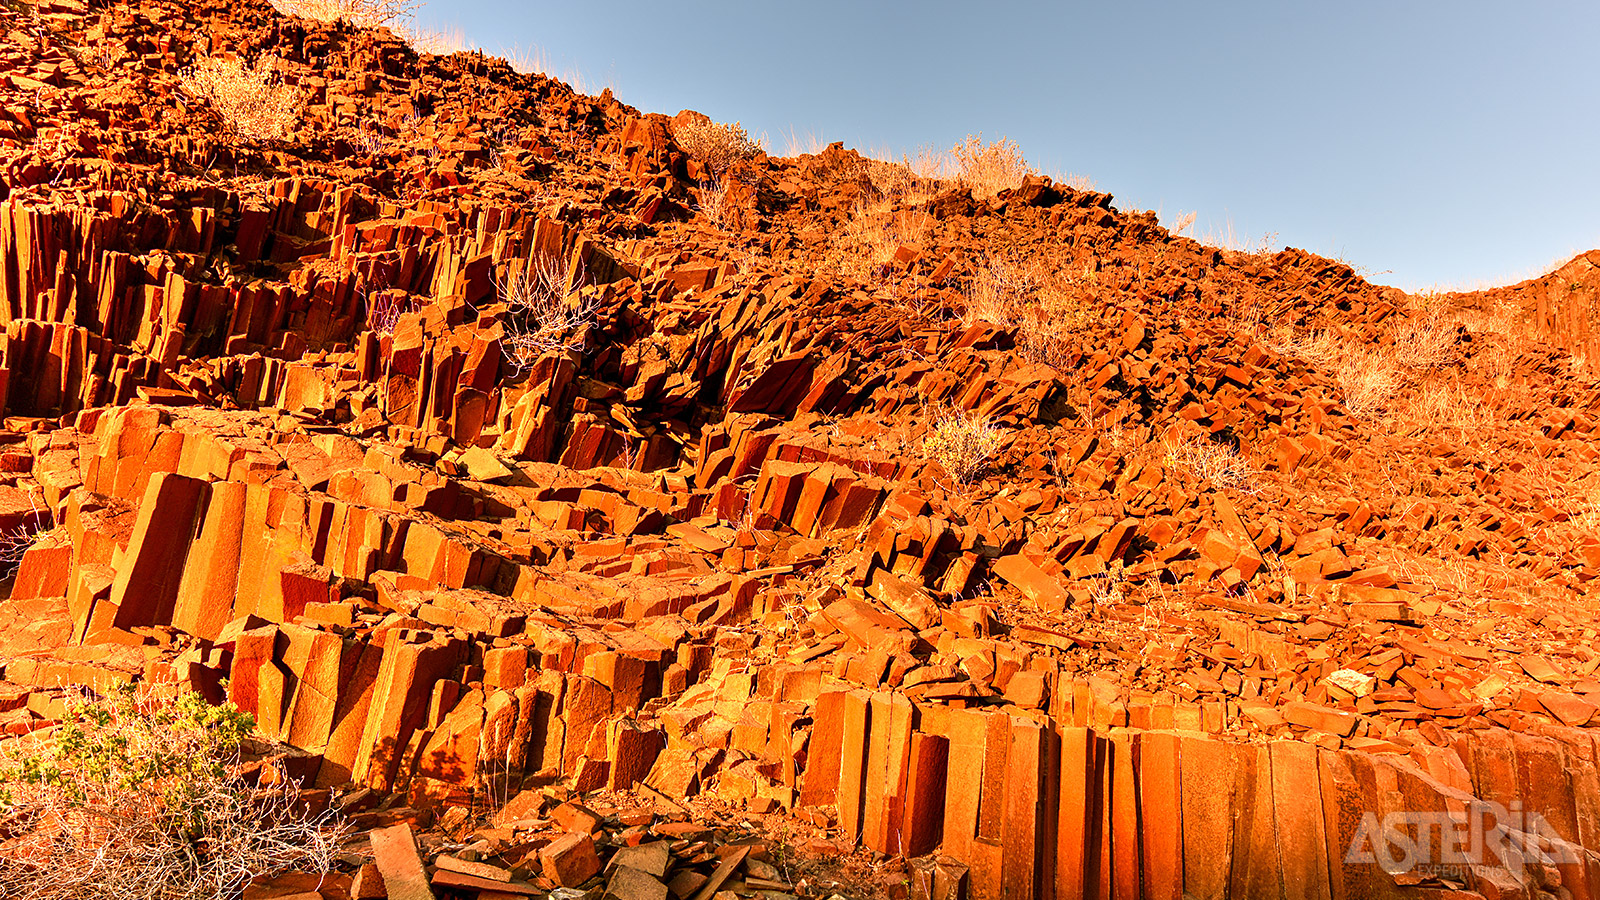 Vlak bij Twijfelfontein bevinden zich de zogenaamde 'Organ Pipes', verticale rotsformaties die meer dan 100 miljoen jaar geleden werden gevormd